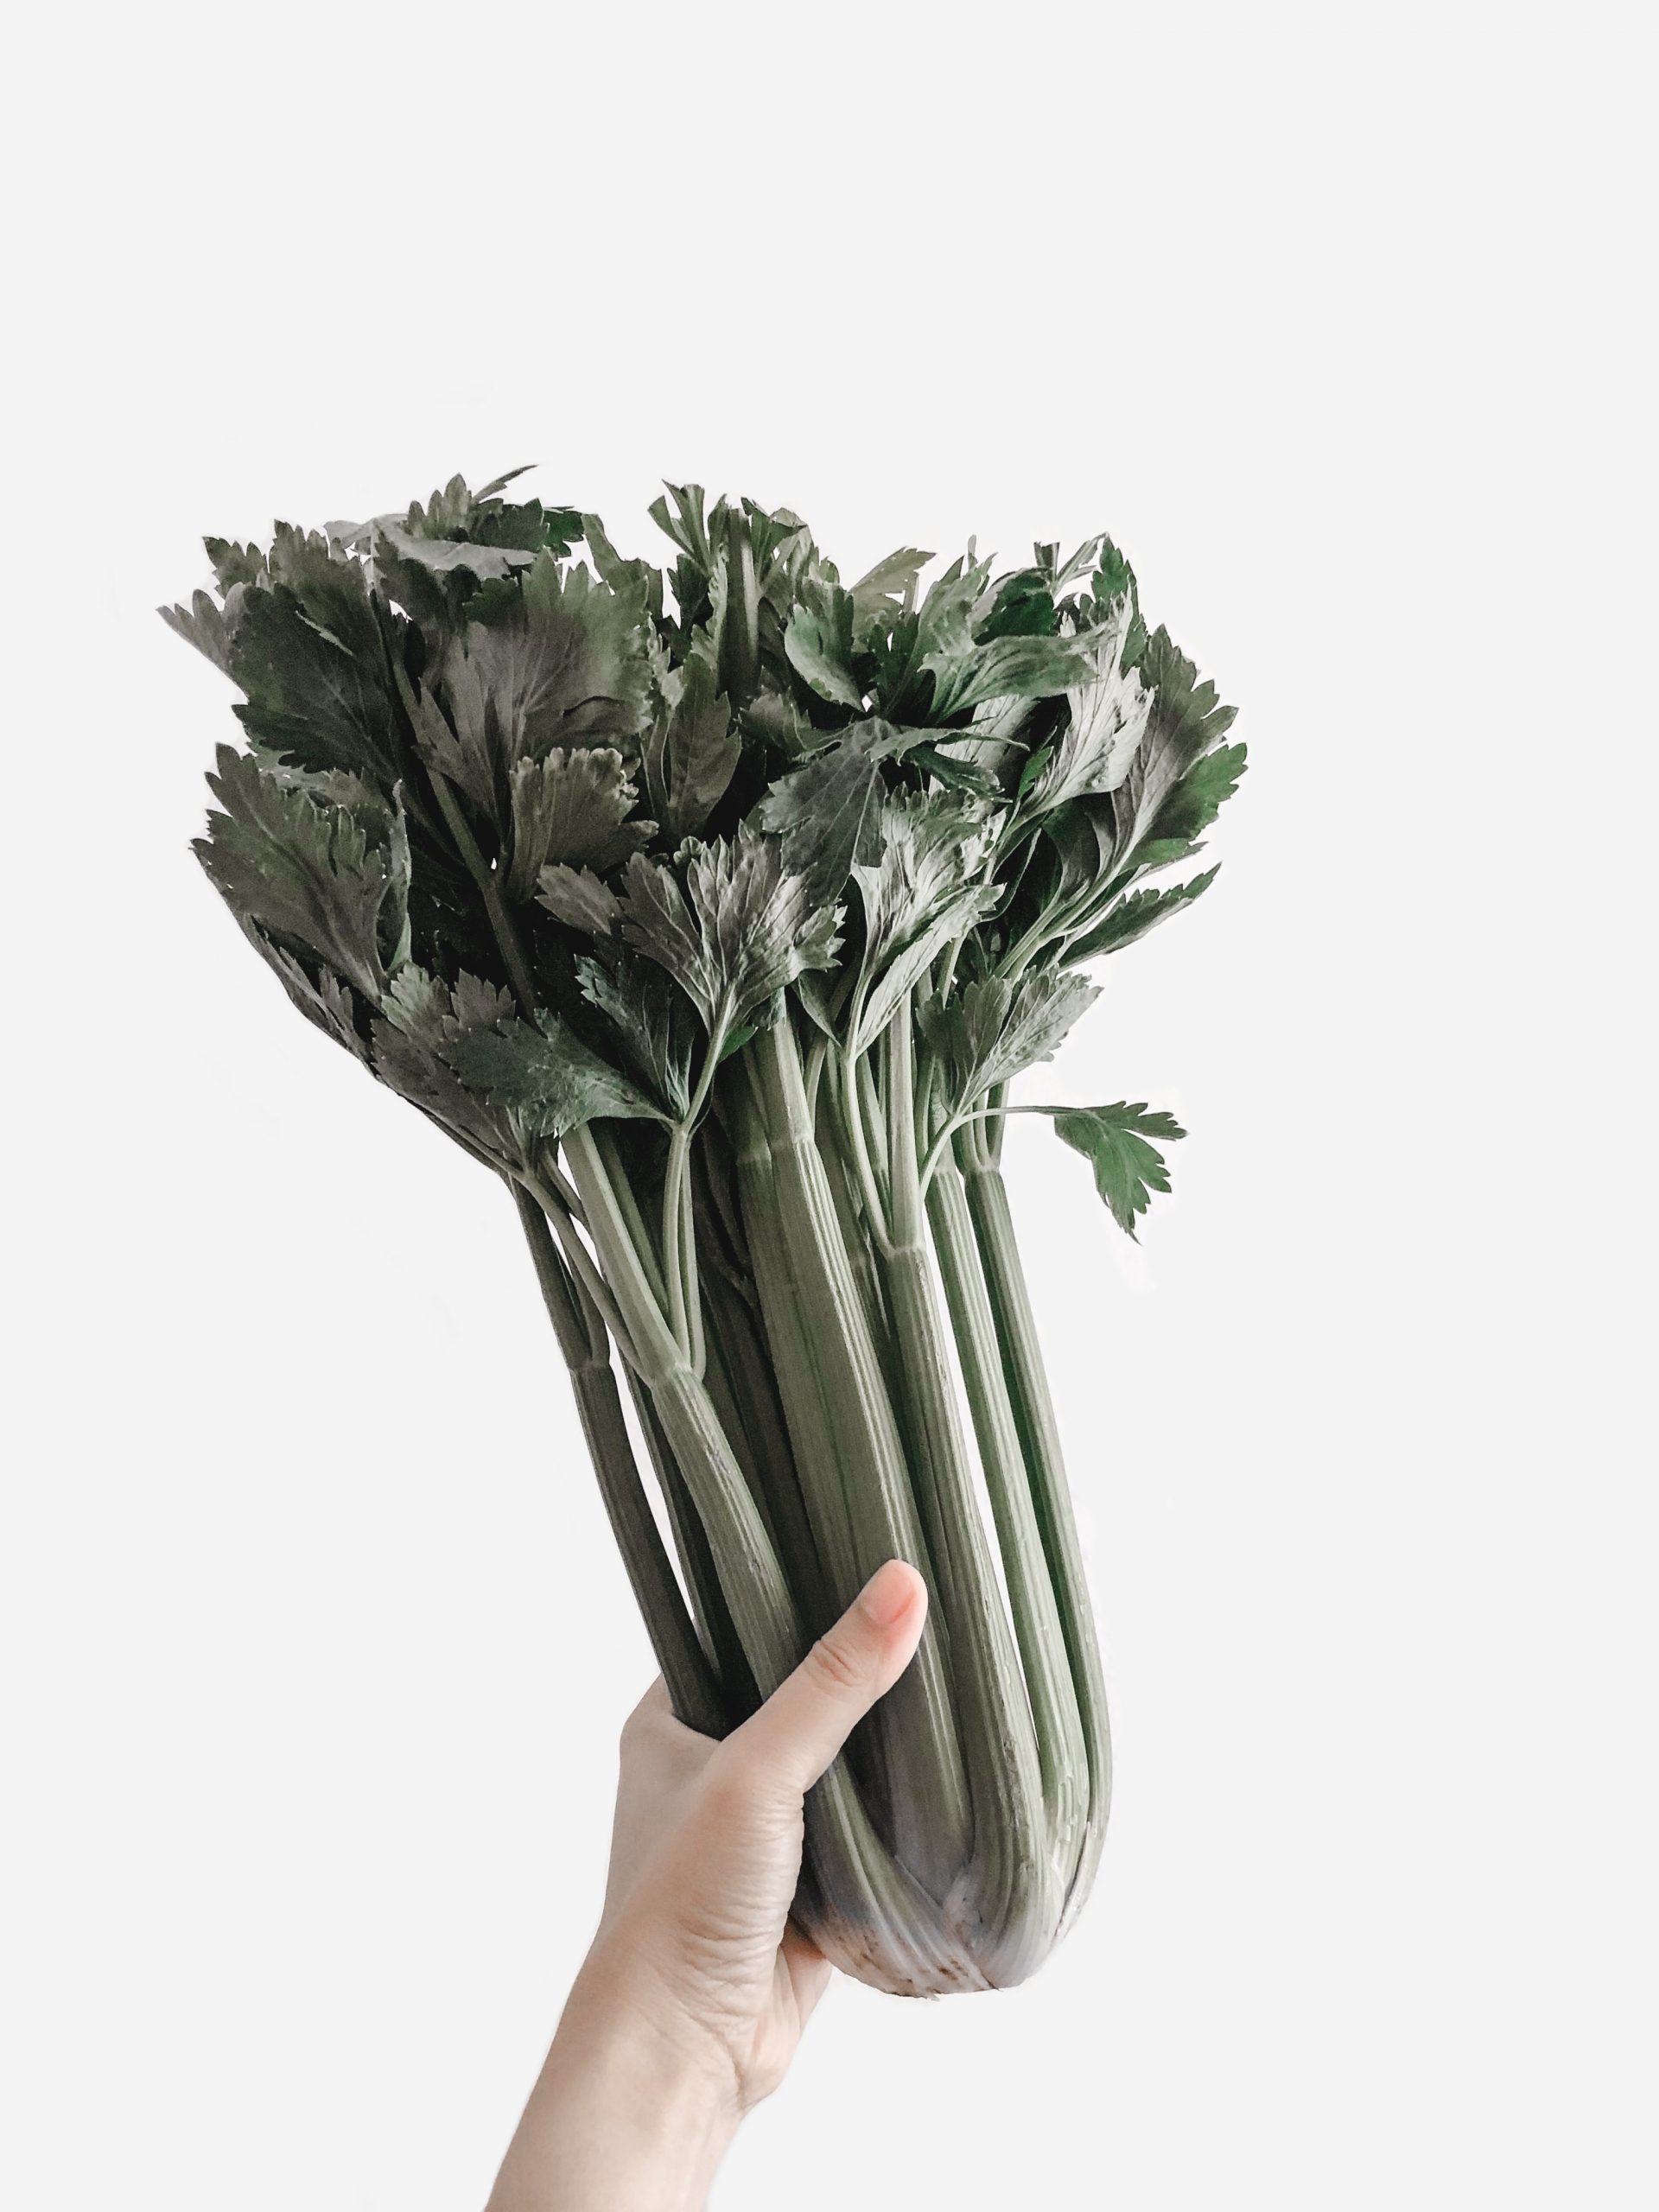 Does Celery Grow Underground?